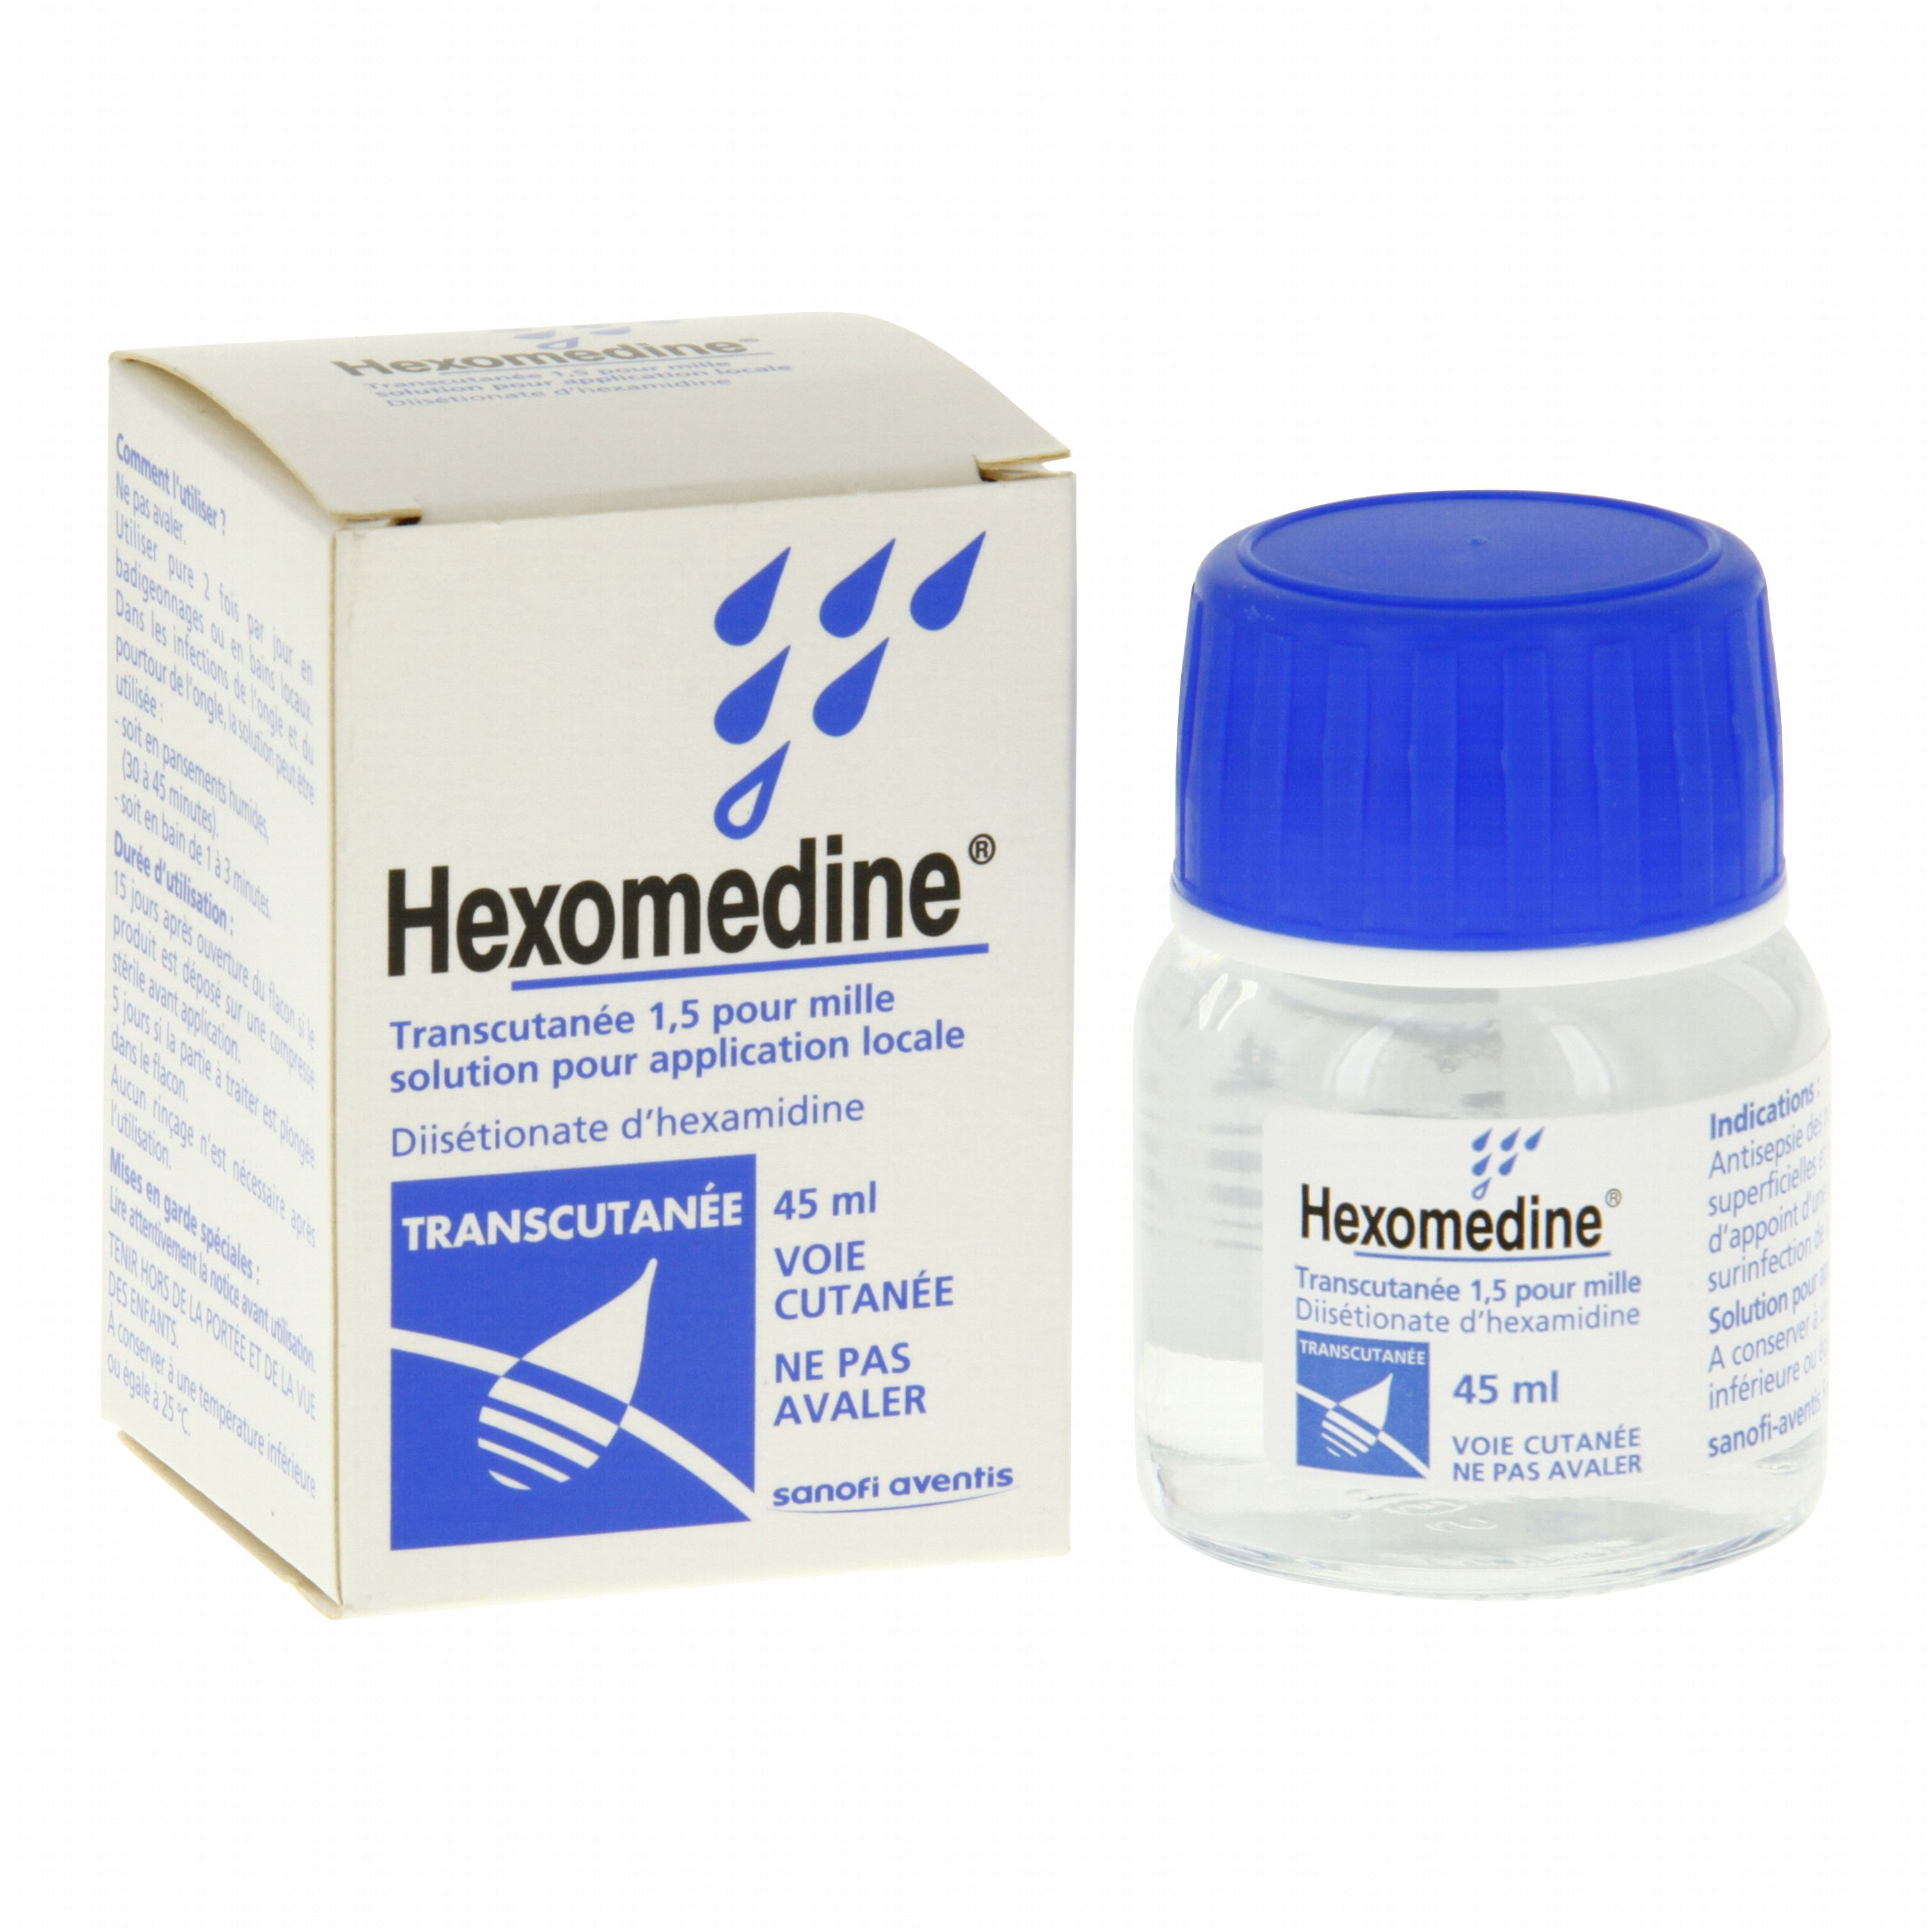 Hexomédine transcutanée 1,5 pour mille flacon 45ml Sanofi ...